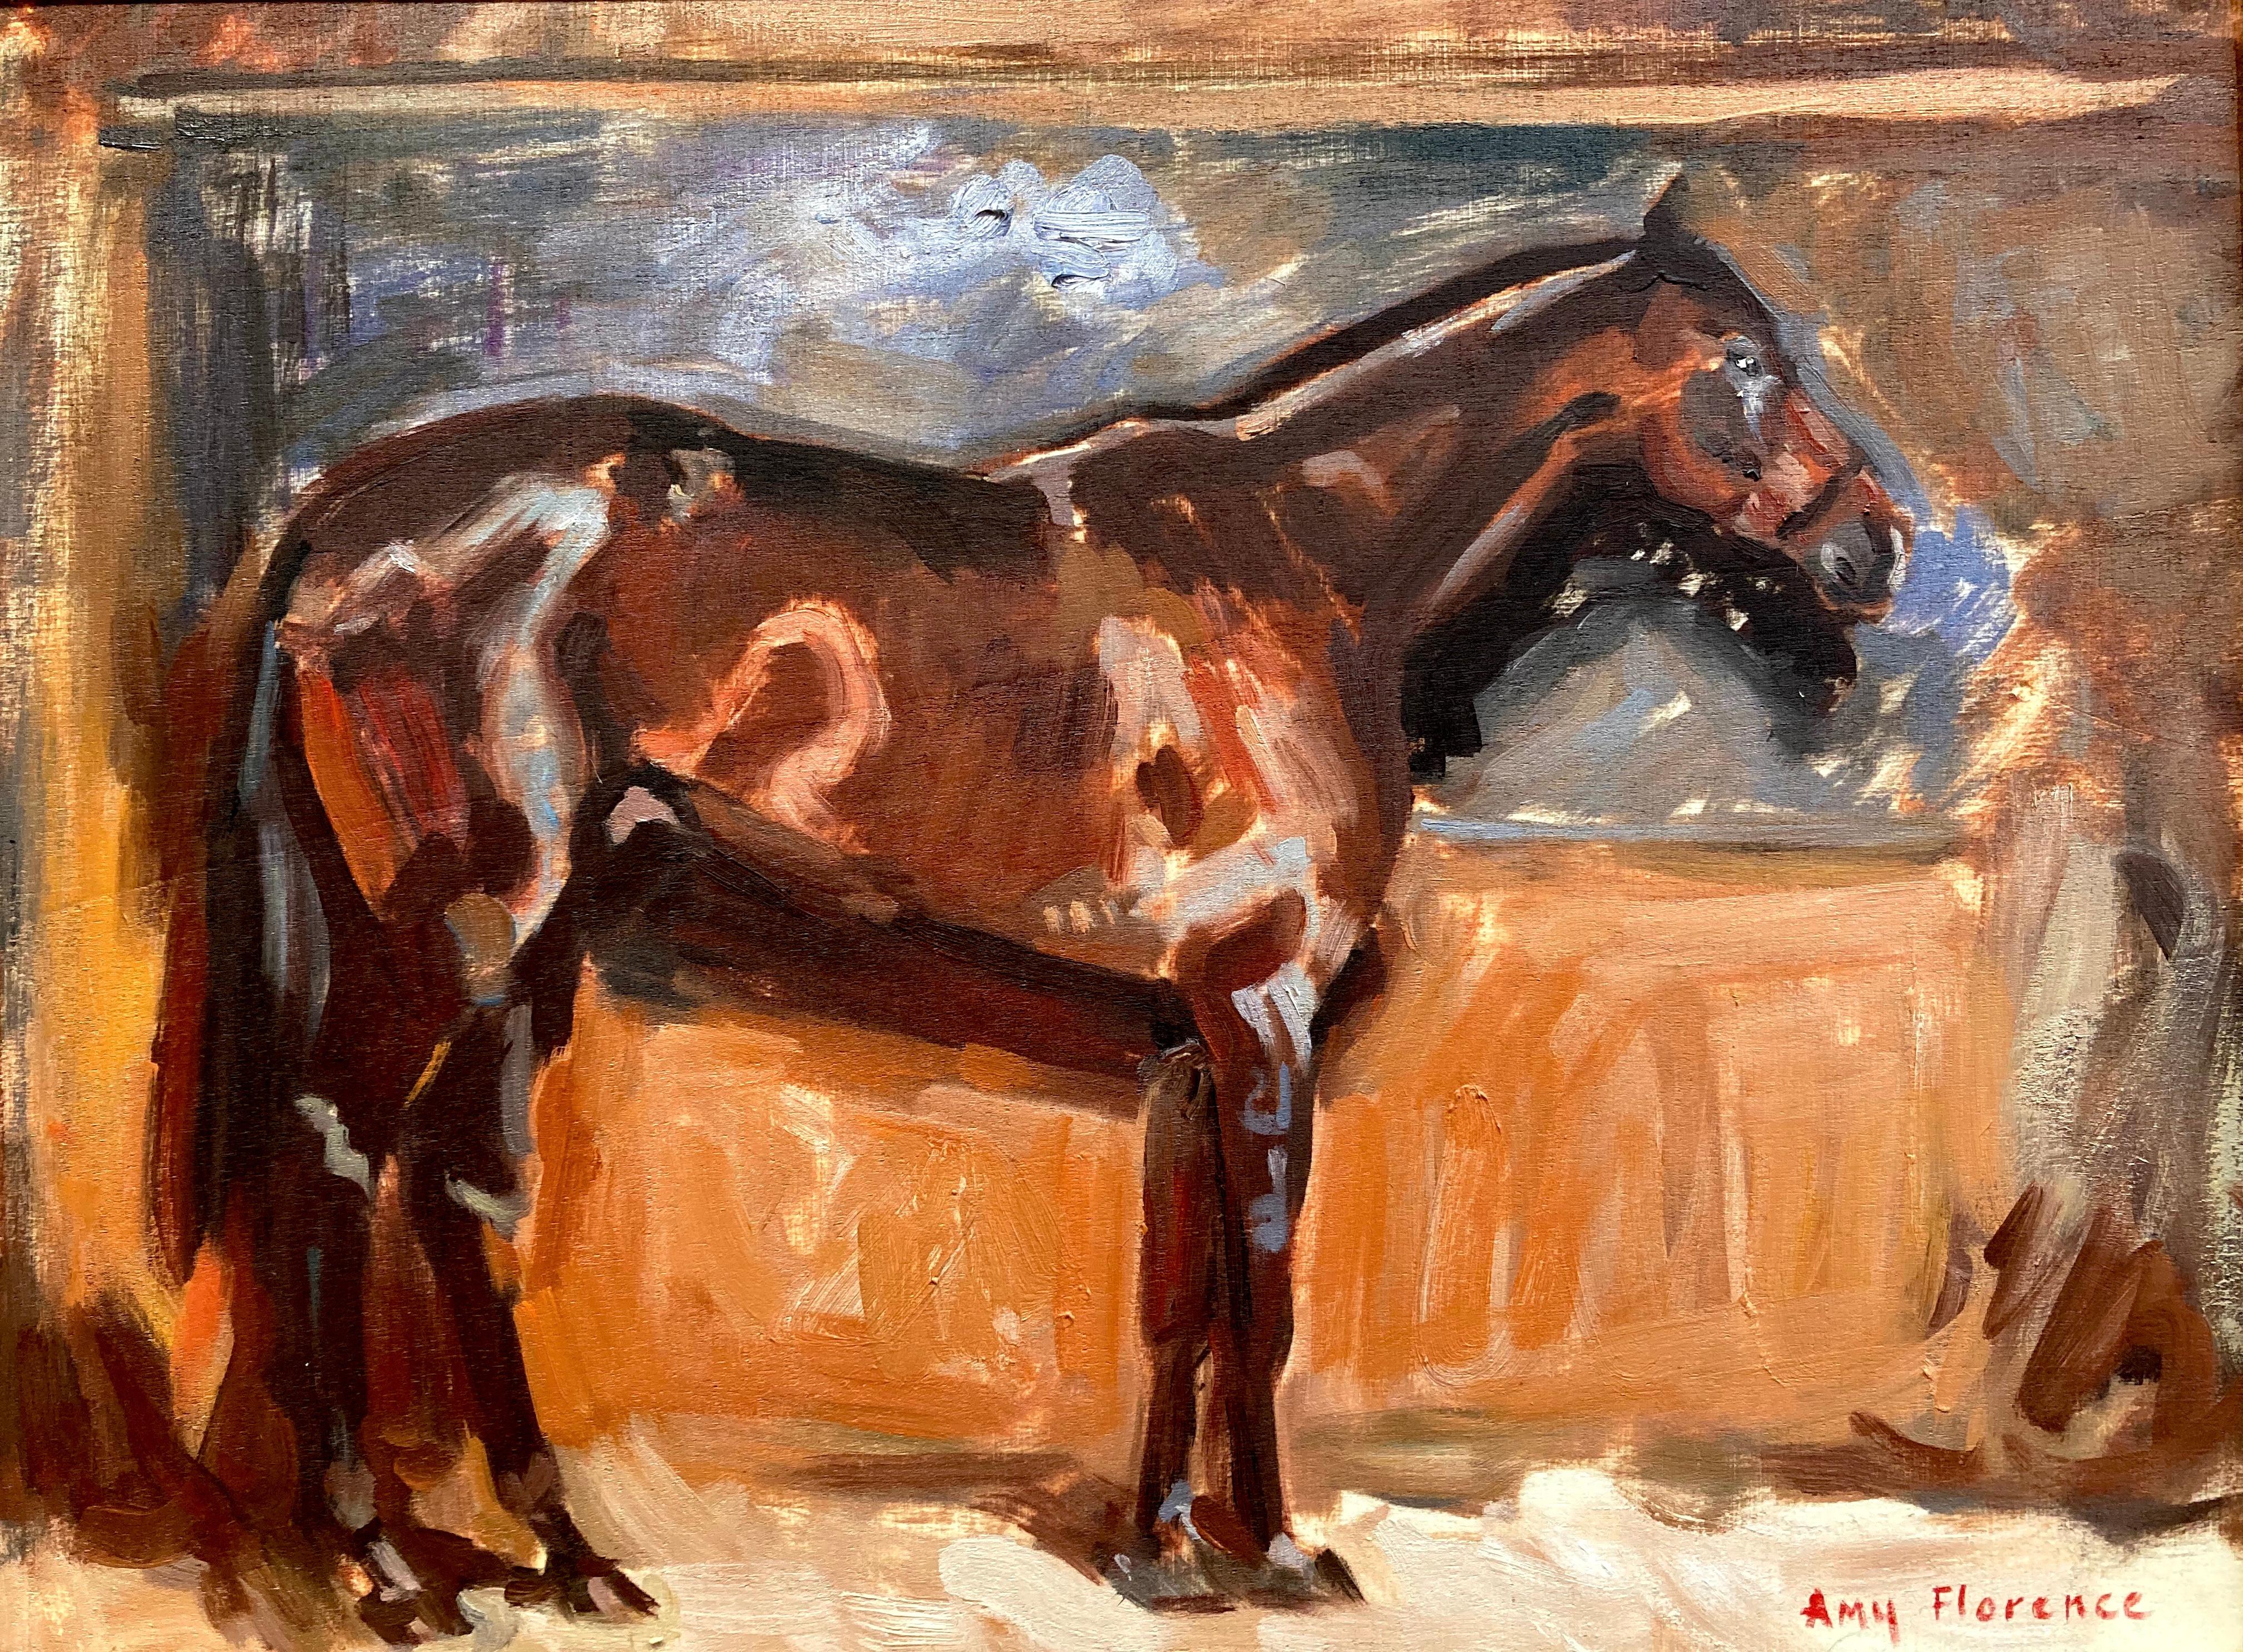 Animal Painting Amy Florence - "Horse Sketch 1" étude d'une peinture d'Alfred Munnings, tons bruns et terreux.